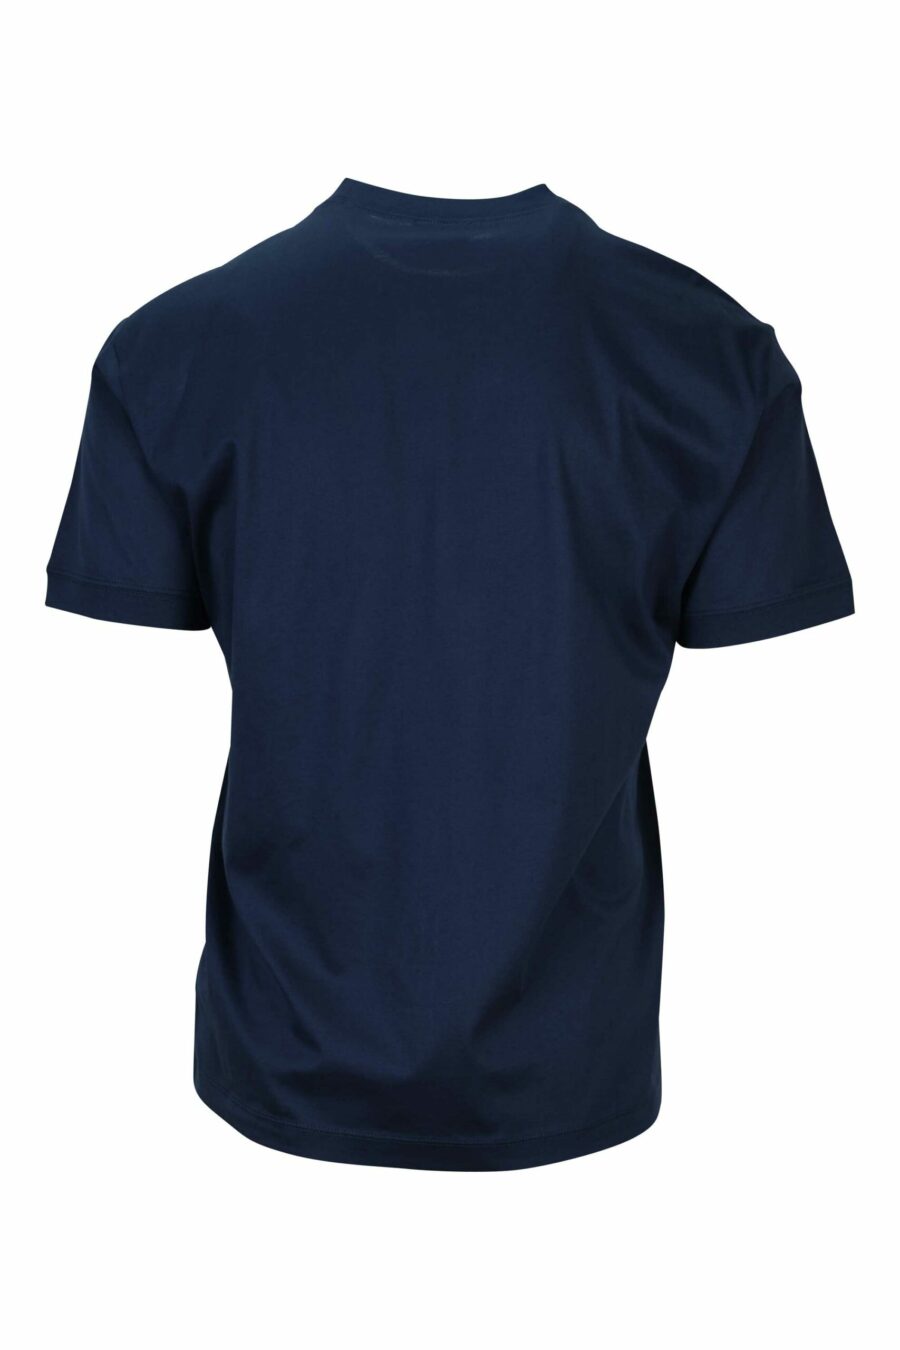 Camiseta azul oscuro con maxilogo "lux identity" en recuadro verde - 8058947495825 1 scaled